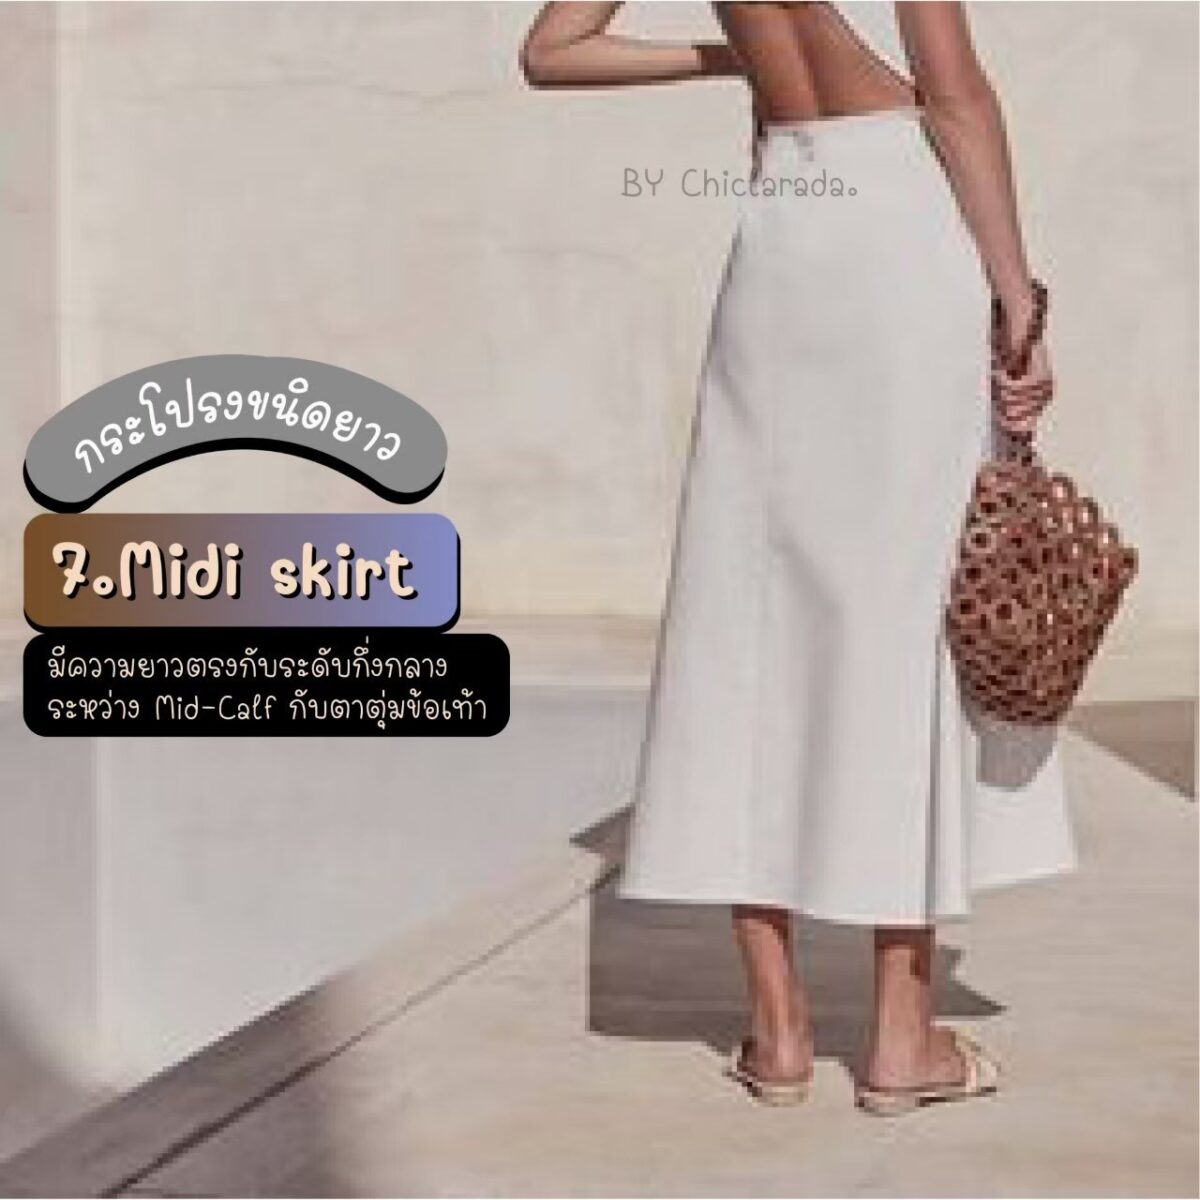 Midi skirt คือกระโปรงที่มีความยาวตรงกับ ระดับ กึ่งกลางระหว่าง mid-calf กับตาตุ่มข้อเท้า